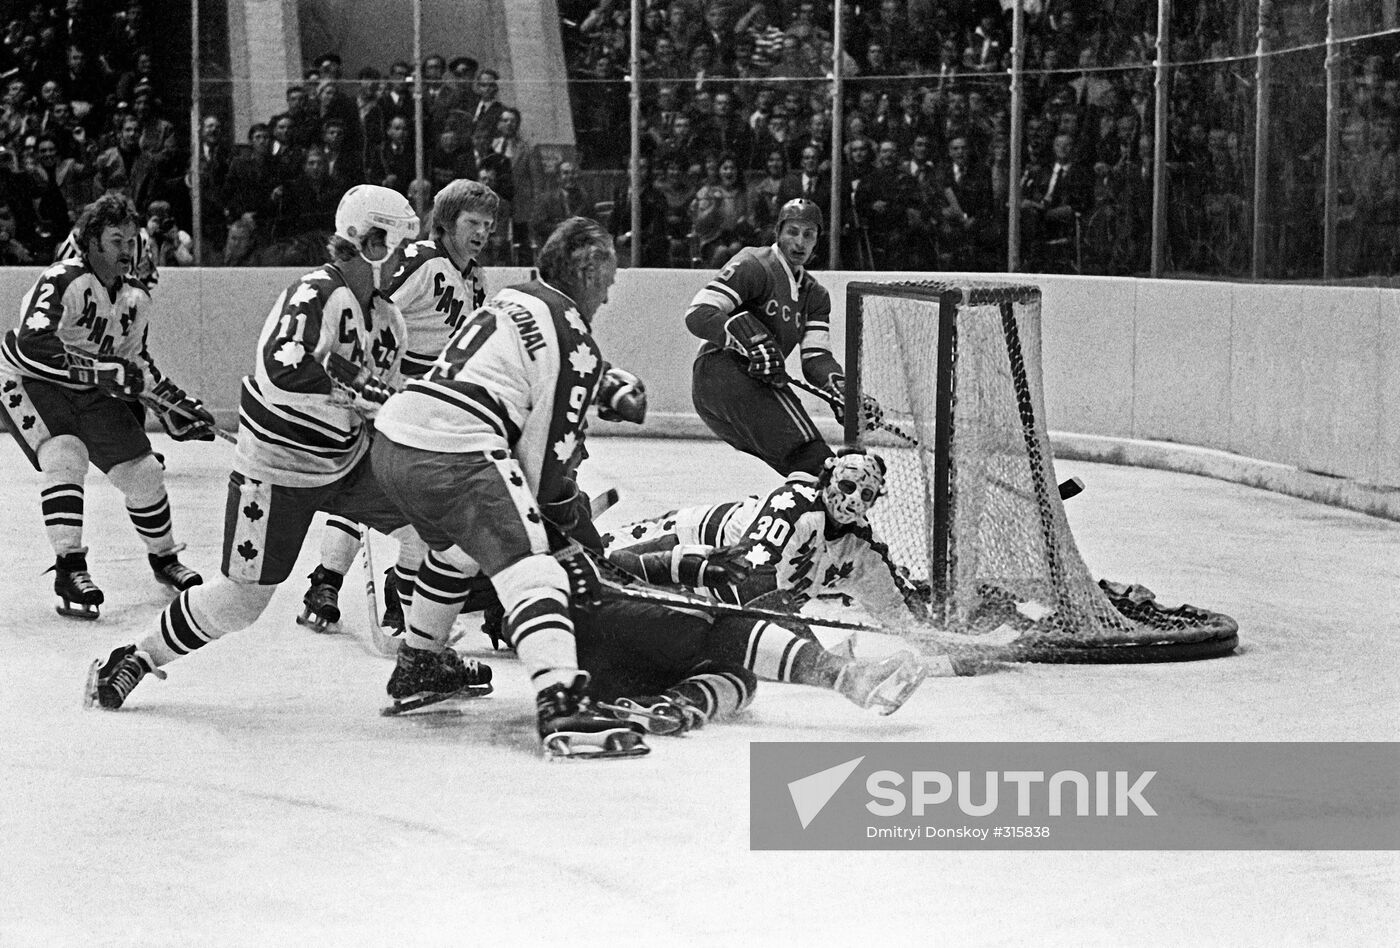 USSR-Canada hockey match